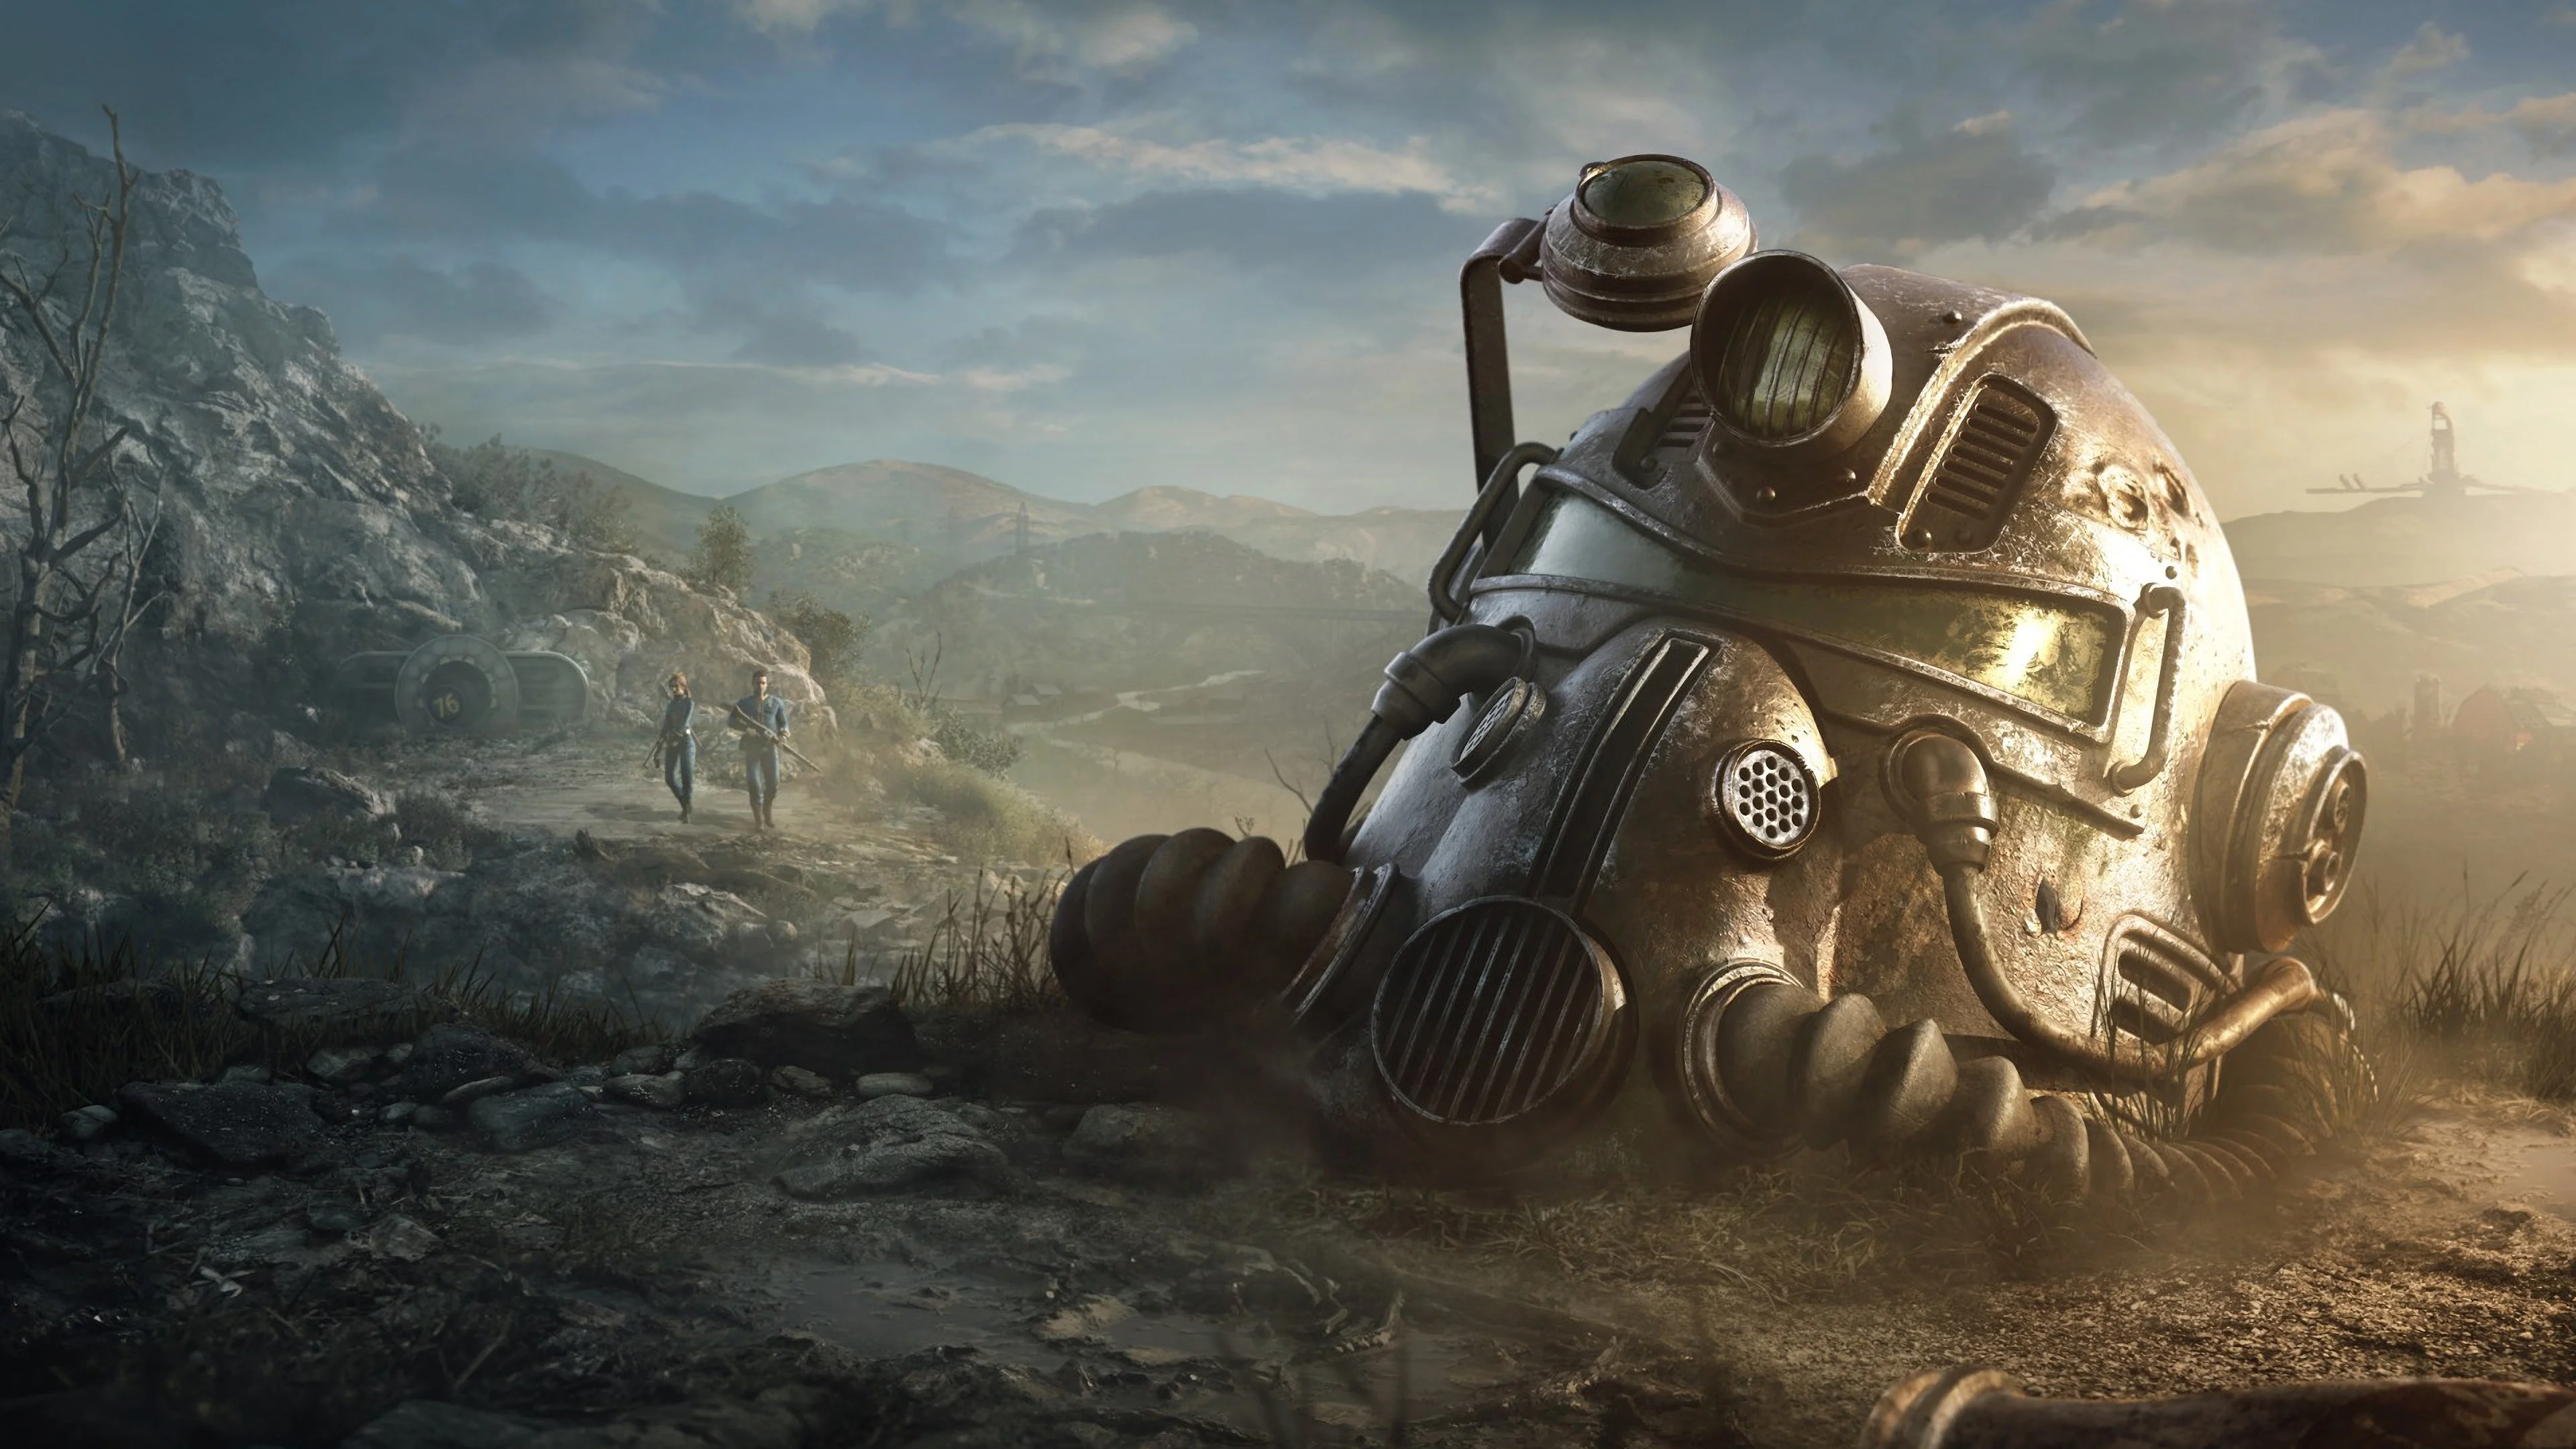 14 ноября выйдет Fallout 76, первой онлайновой части серии, — игроки вновь выйдут из своих убежищ и отправятся исследовать опасный мир, на этот раз — в Западной Вирджинии. По случаю скорого релиза мы собрали самые любопытные факты о франшизе: от разных концептов первой Fallout до отсылки к Дугласу Адамсу.